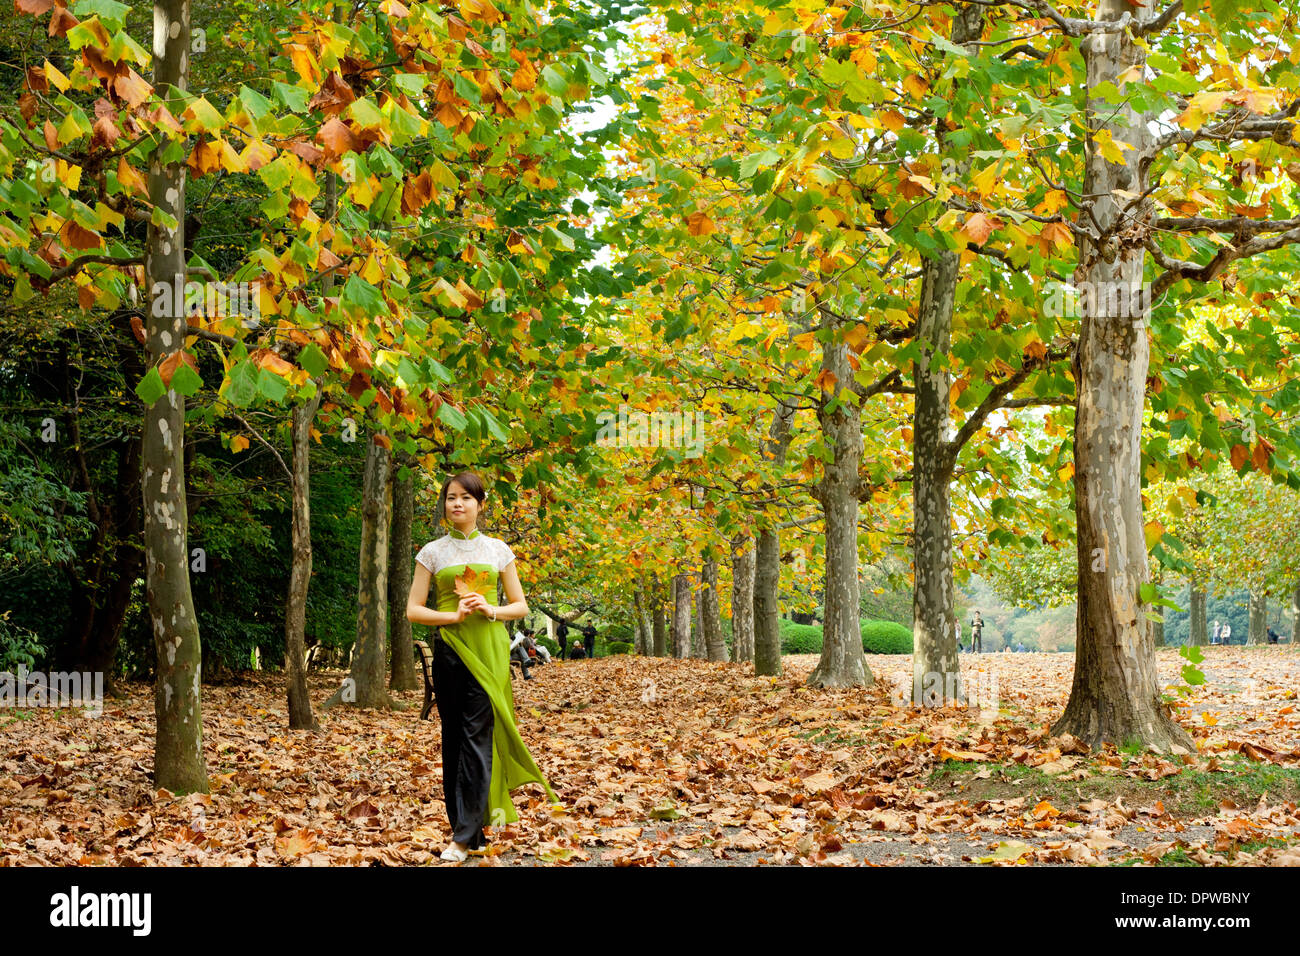 Junge Frau, die allein auf einem herbstlichen, blattbedeckten Weg zwischen Herbstbäumen spazieren geht, die Blätter halten Stockfoto